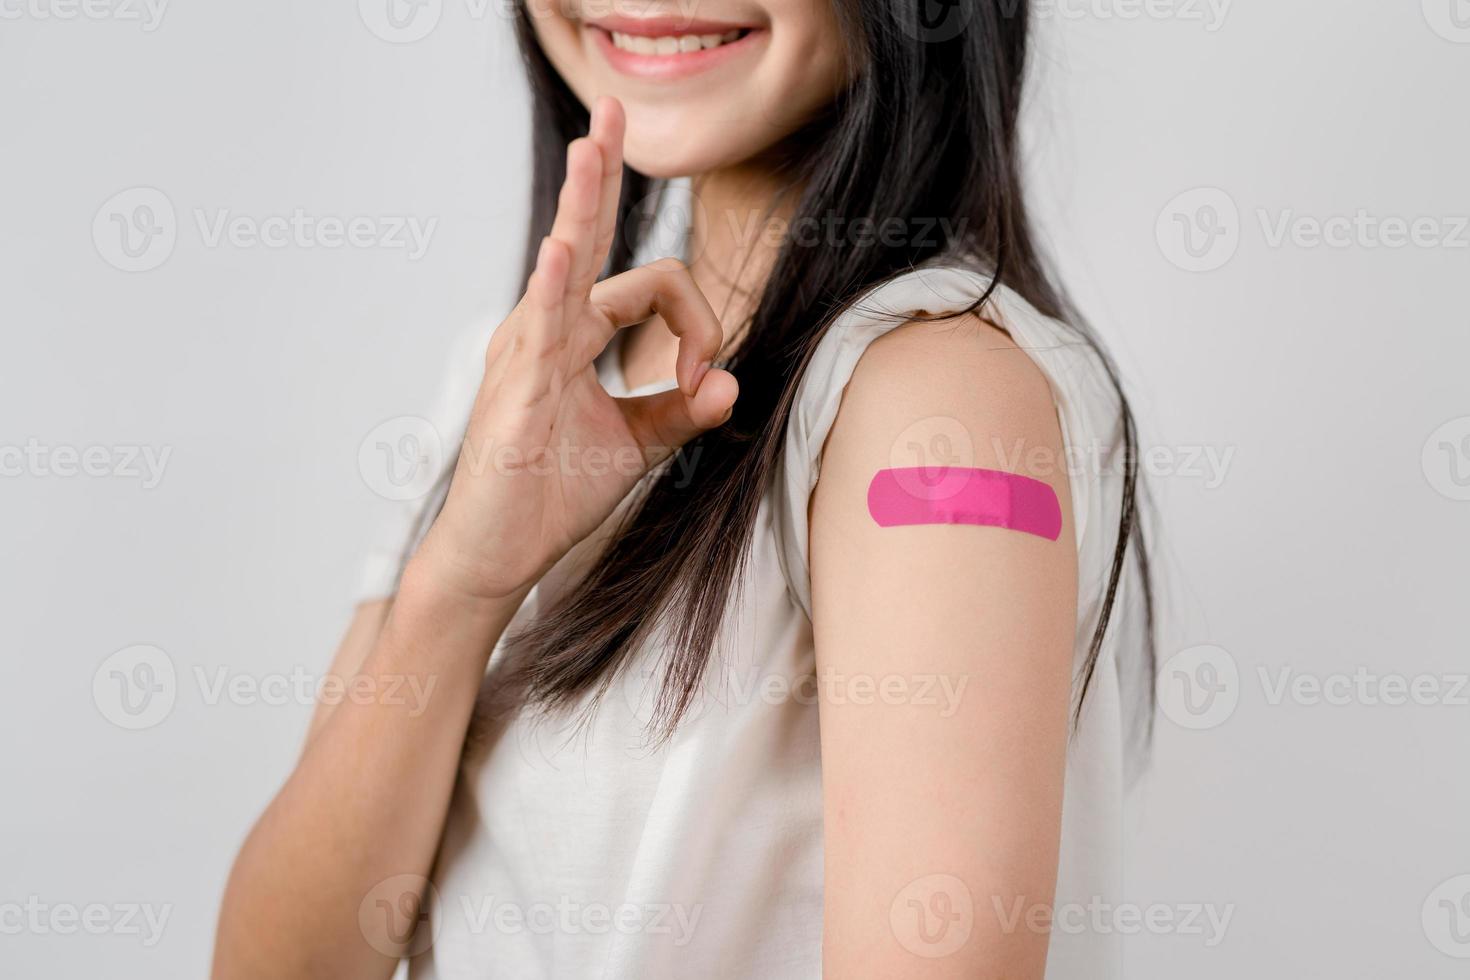 contento joven mujer espectáculo Okay firmar después consiguiendo un vacuna. demostración hombro con vendaje después recepción vacunación, manada inmunidad, lado efecto, aumentador de presión dosis, vacuna pasaporte y coronavirus pandemia foto